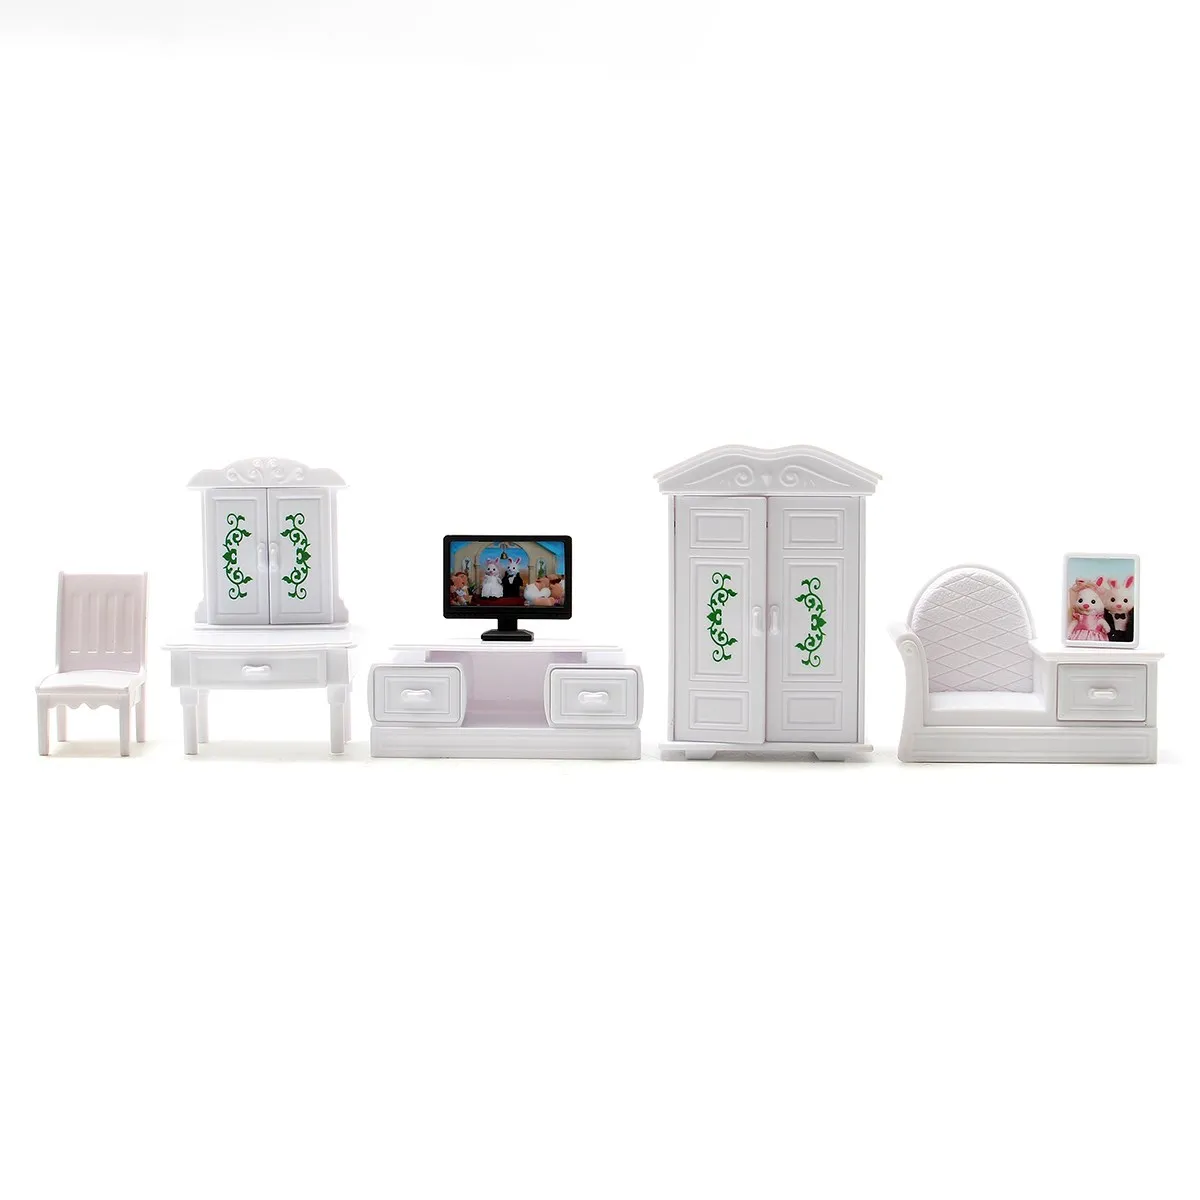 New DIY Putih Ruang Tamu Set Plastik Rumah Boneka Miniatur Furniture